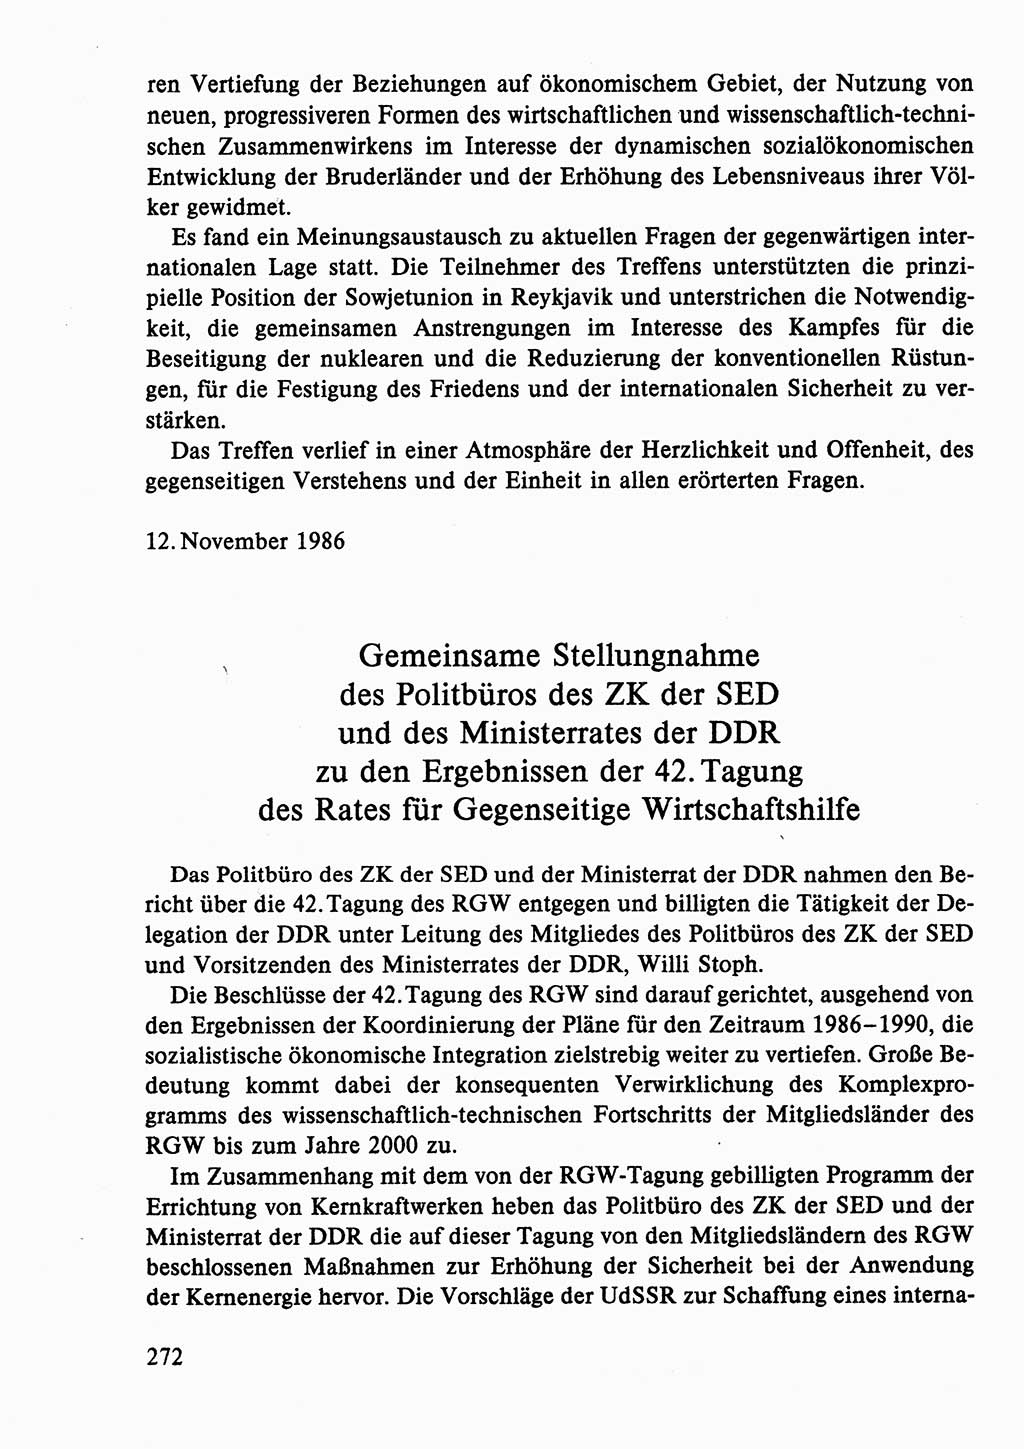 Dokumente der Sozialistischen Einheitspartei Deutschlands (SED) [Deutsche Demokratische Republik (DDR)] 1986-1987, Seite 272 (Dok. SED DDR 1986-1987, S. 272)